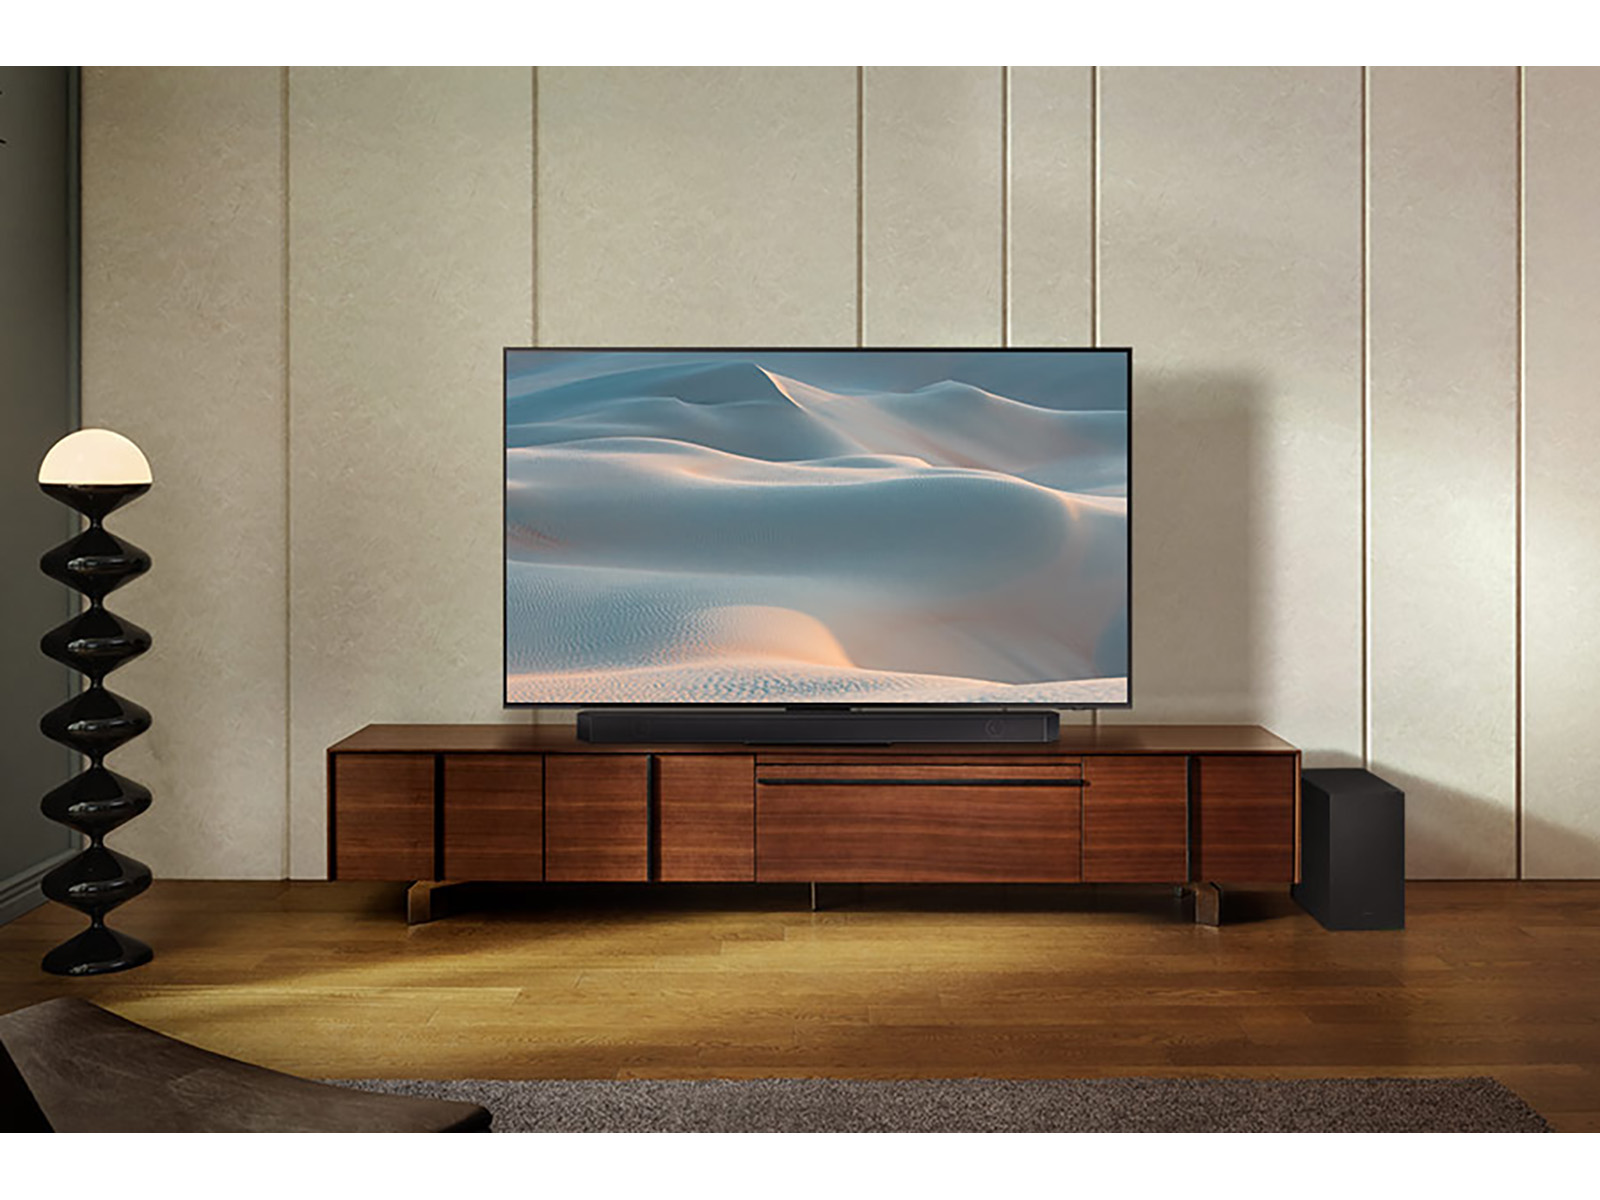 HW-Q70R Samsung, Harman/Kardon Soundbar with Dolby Atmos Home Theater -  HW-Q70R/ZA